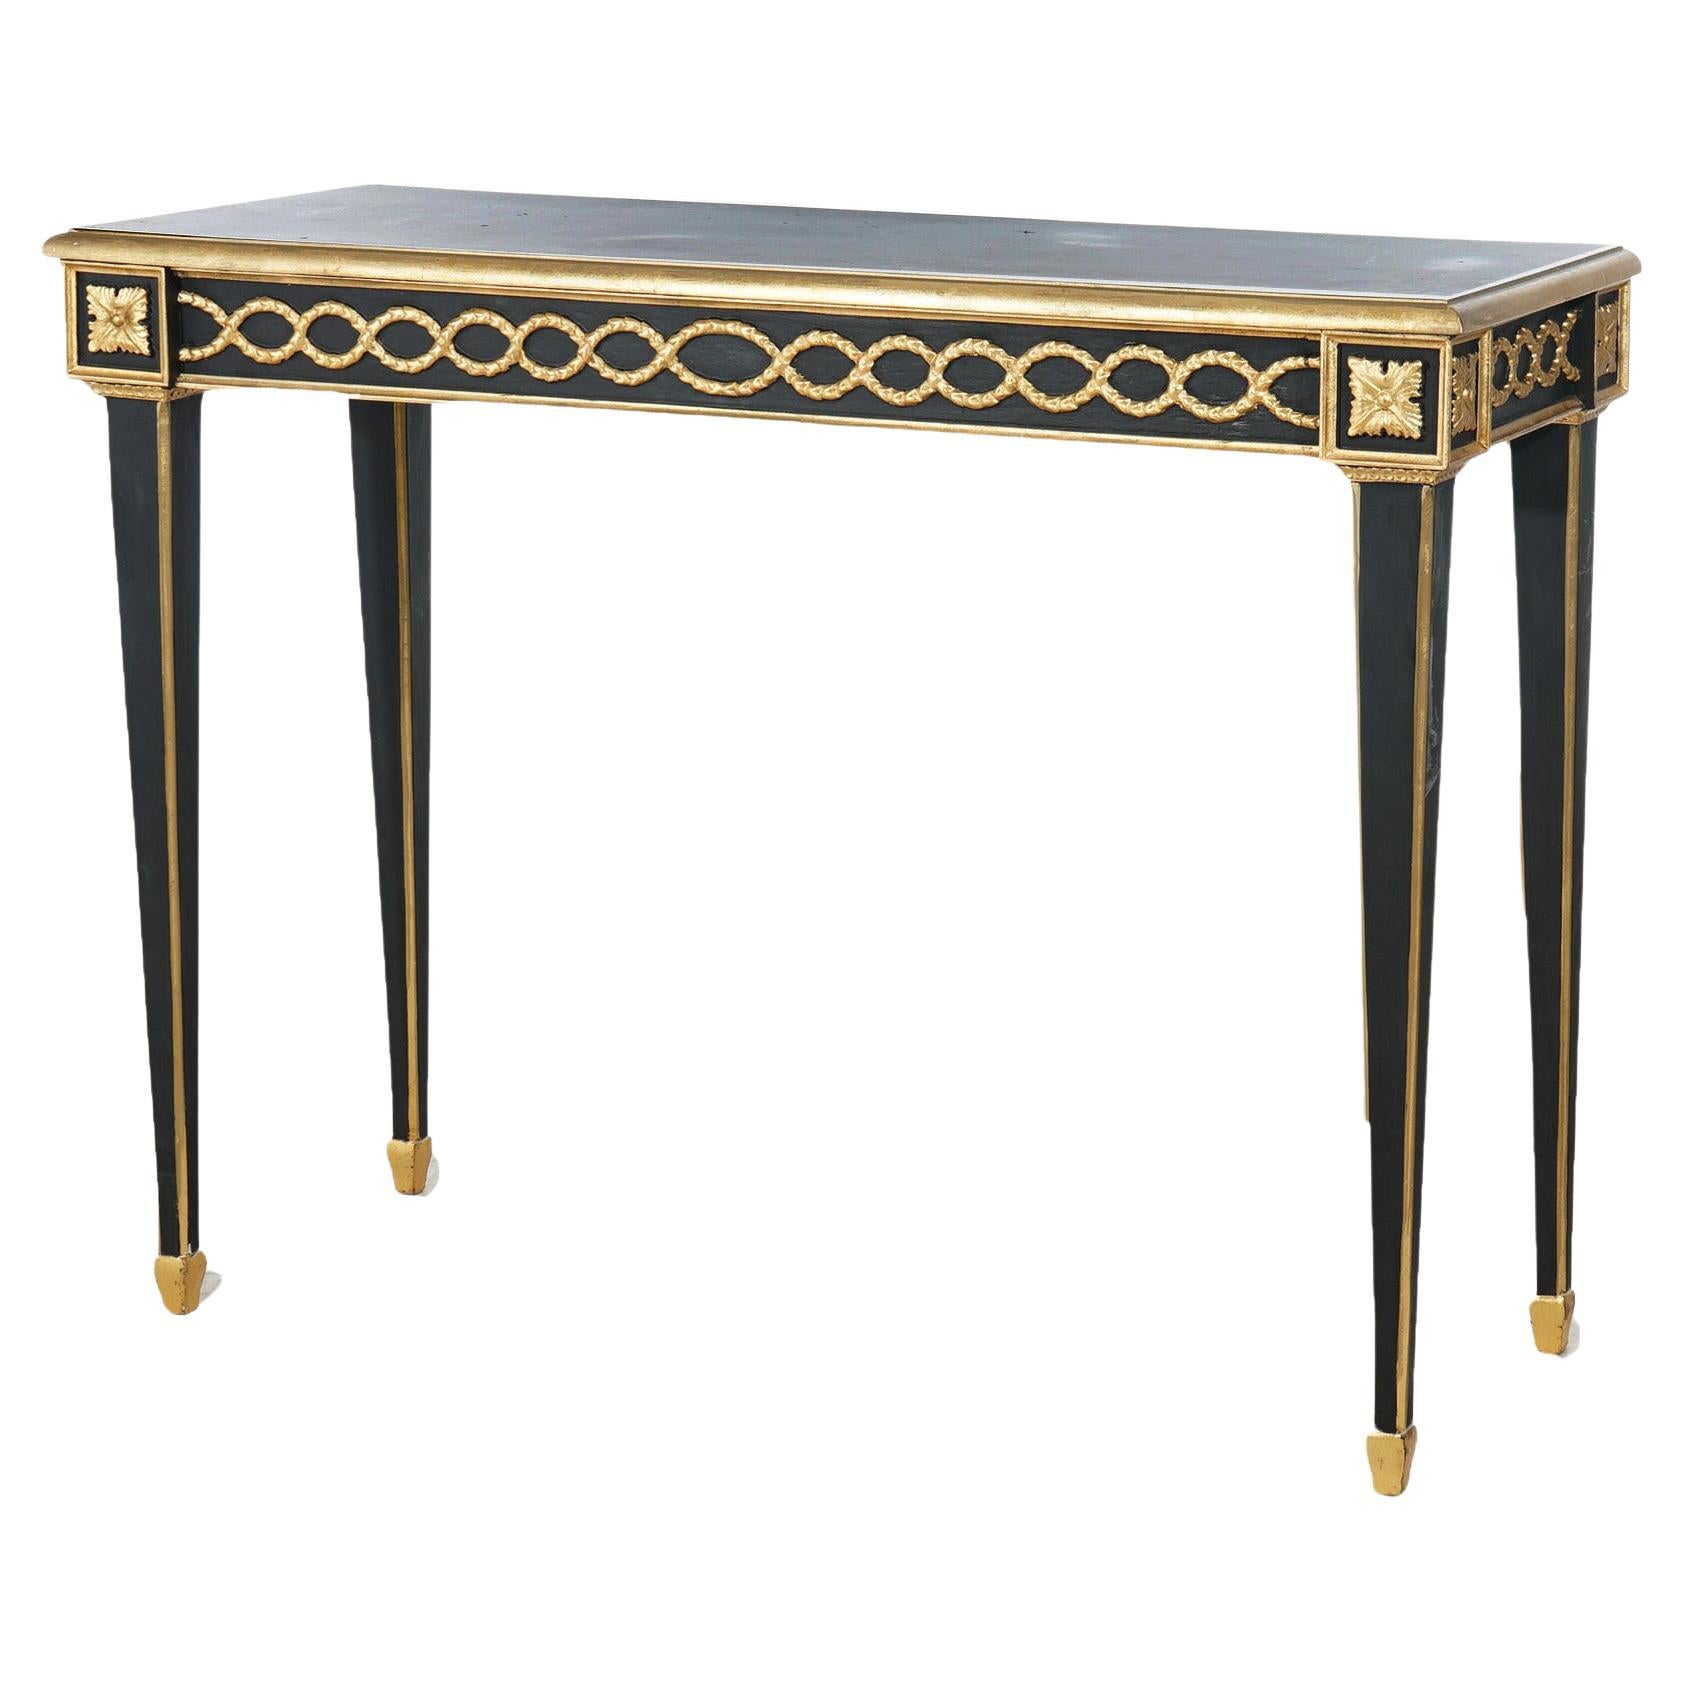 Table console ébonisée et dorée de style Empire français 20e siècle